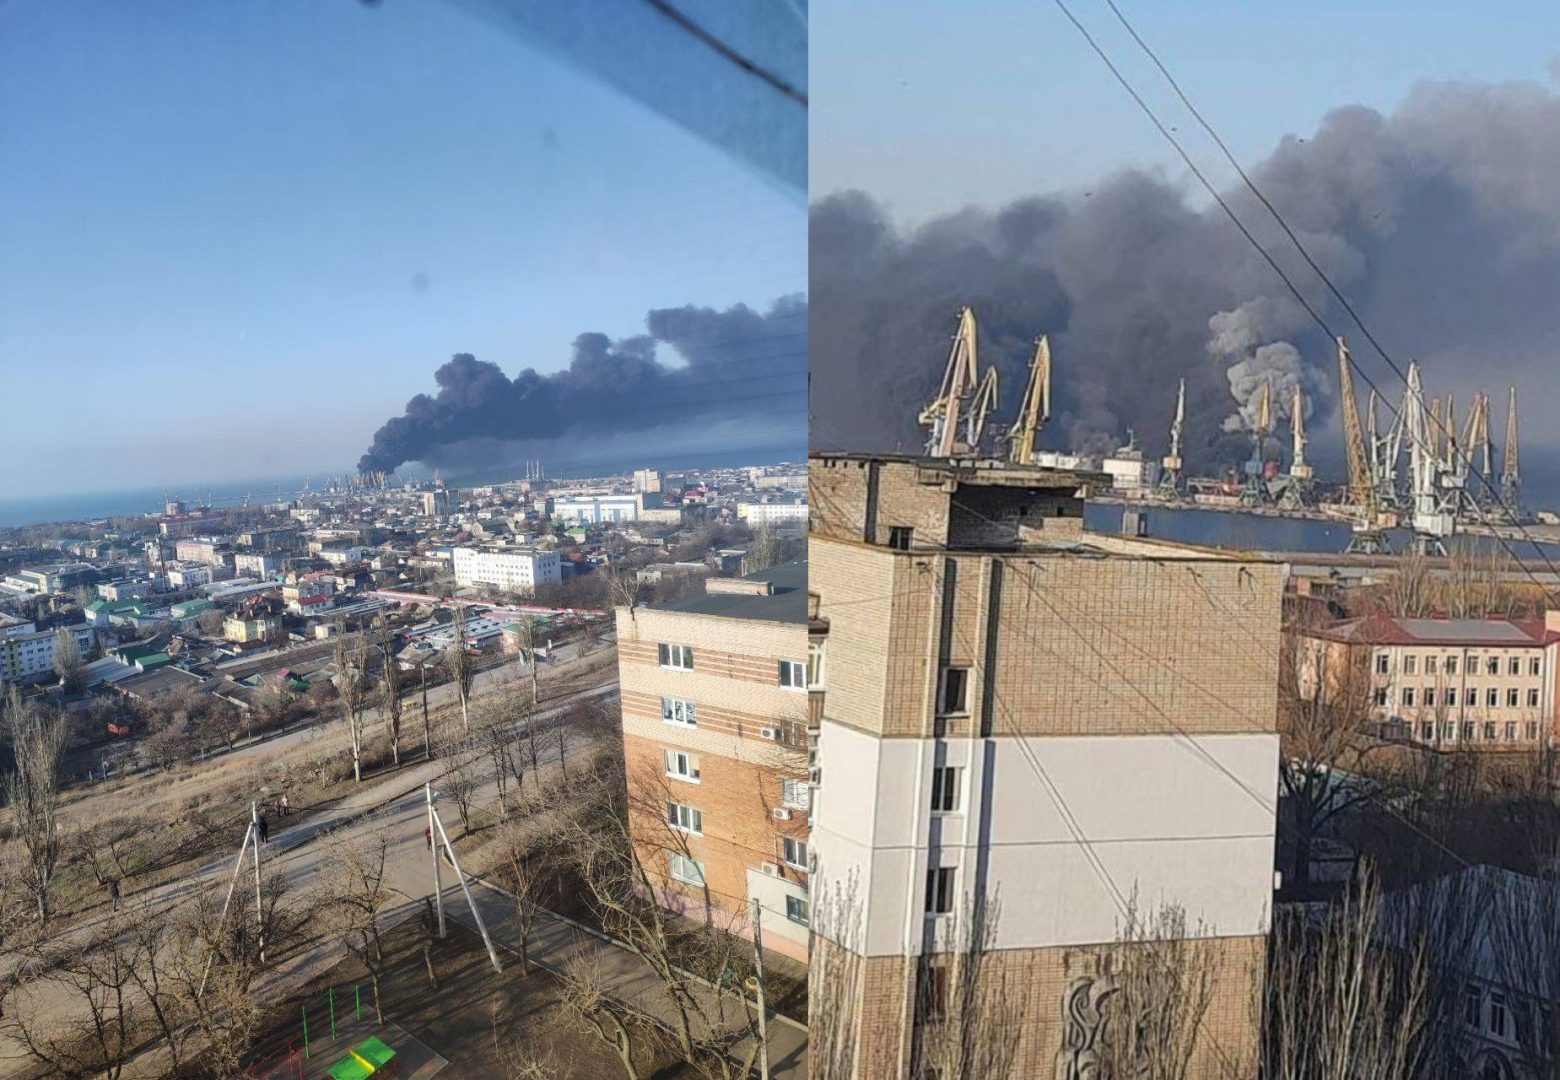 Πόλεμος στην Ουκρανία: Έκρηξη και φωτιά στο λιμάνι του Μπερντιάνσκ - Πληροφορίες ότι χτυπήθηκε ρωσικό πλοίο